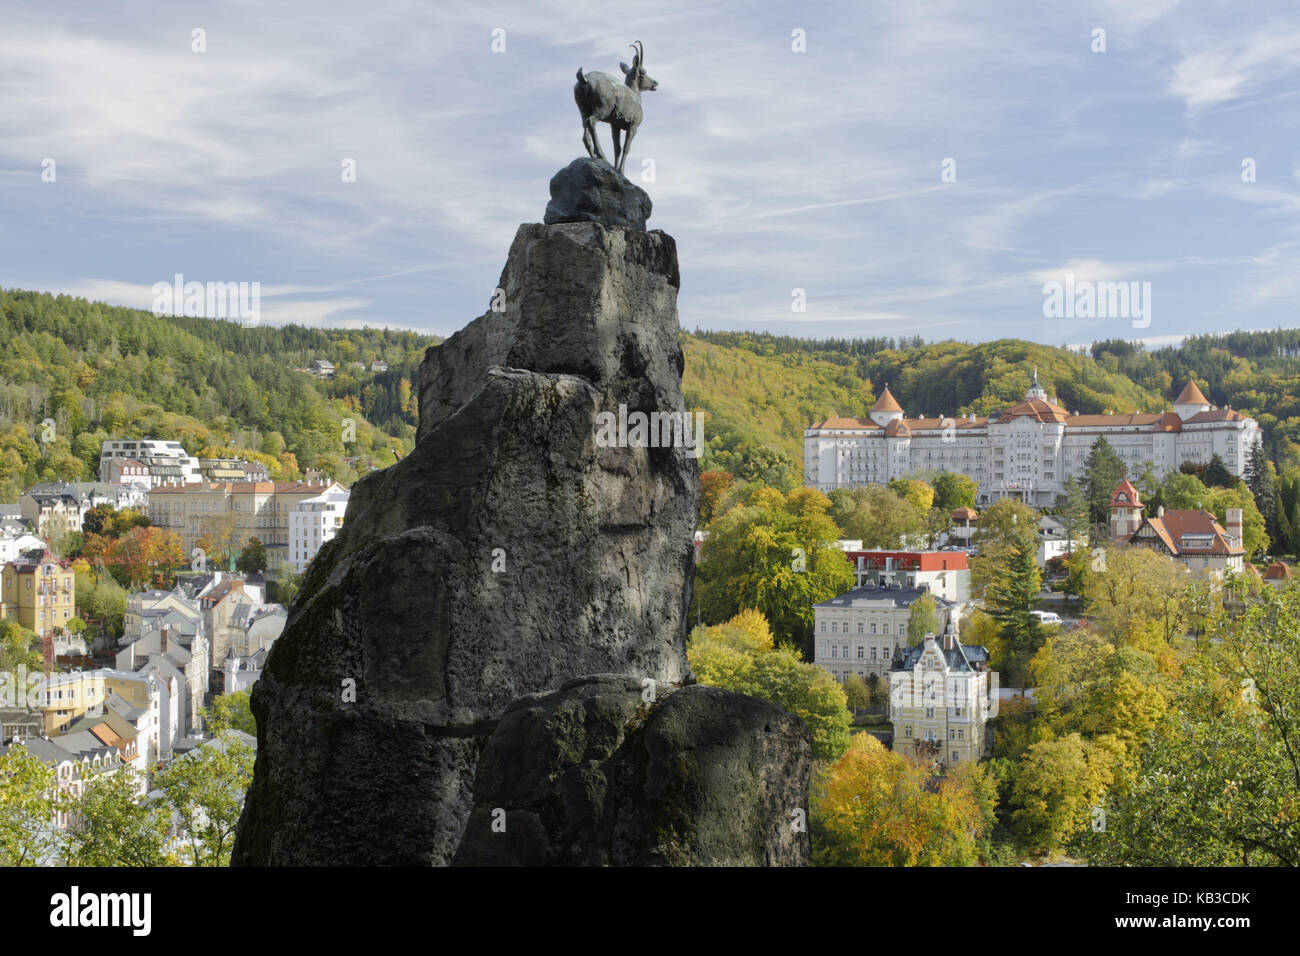 Statua, Gämse sulla roccia sopra Karlsbad, originale della statua sviluppata nel 1851 dallo scultore berlinese August Kiss, Repubblica Ceca, Europa, Foto Stock